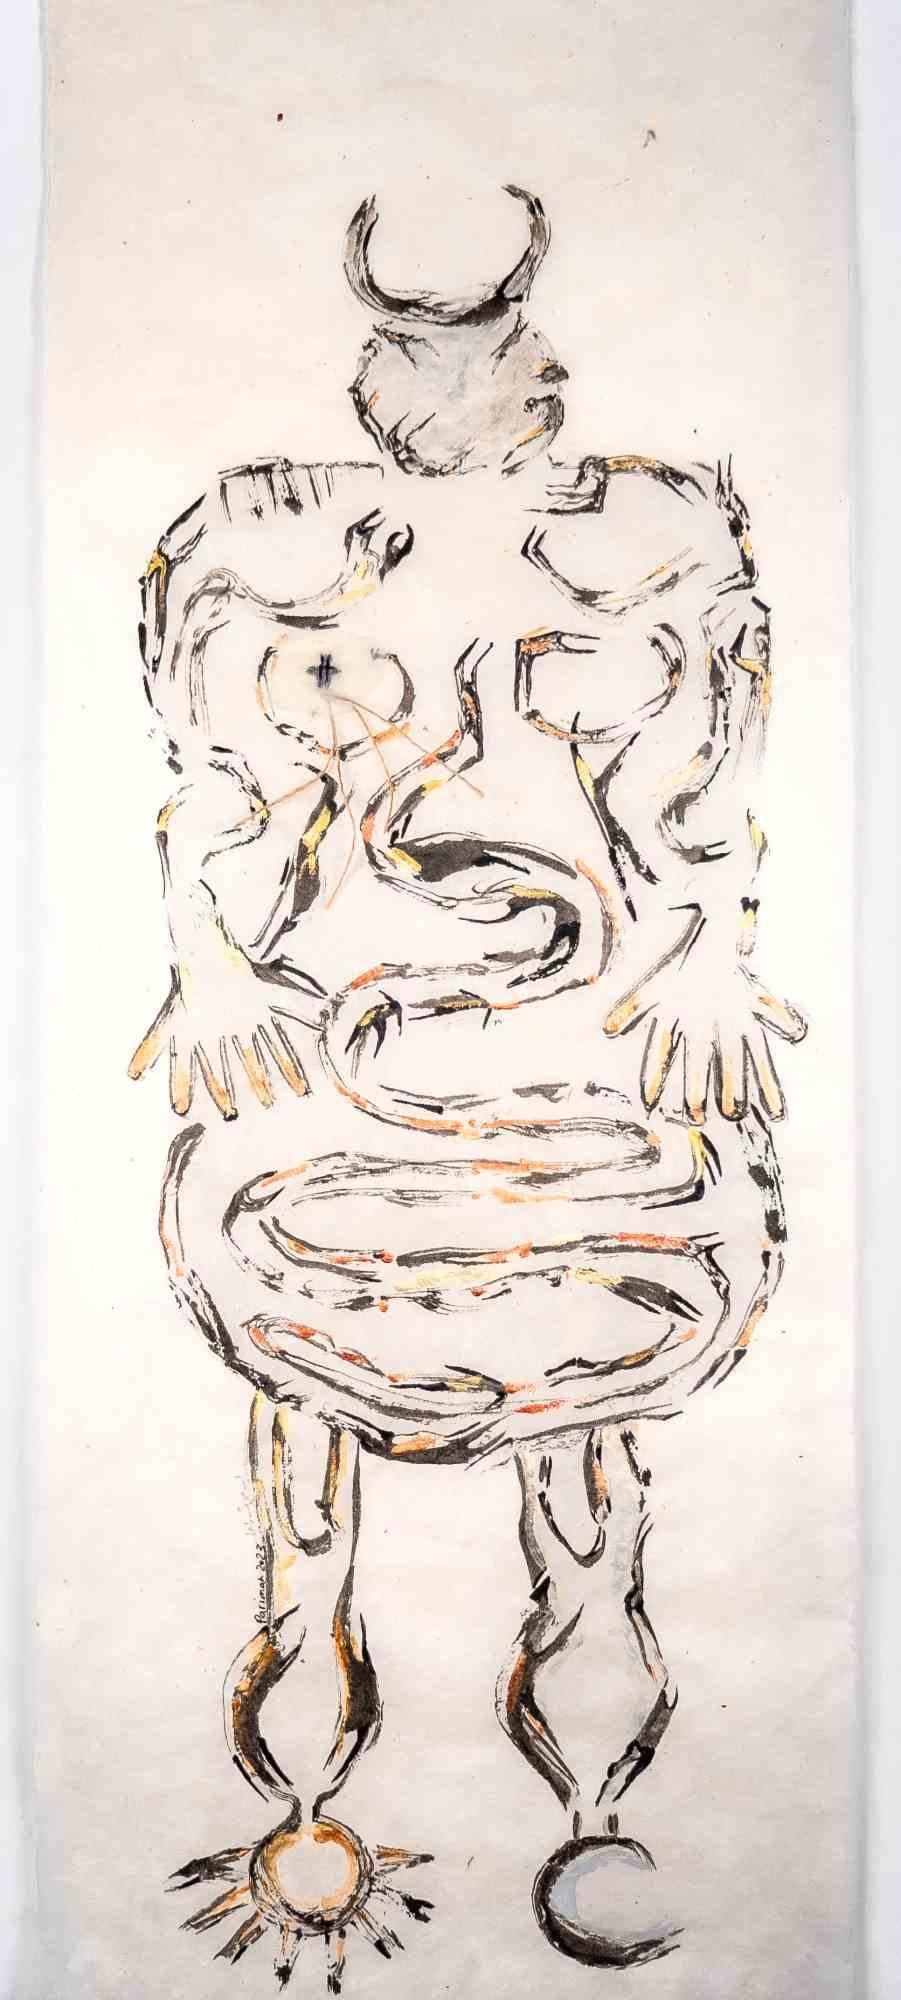 Gottheit des Tages und Nacht der Wege ist eine Zeichnung der iranischen Künstlerin und Dichterin Parimah Avani aus dem Jahr 2023.

China-Tusche, Acryl und Mischtechnik auf Himalaya-Washi-Lokta-Papier mit aufgetragenem Tengujo-Kaschmirpapier und